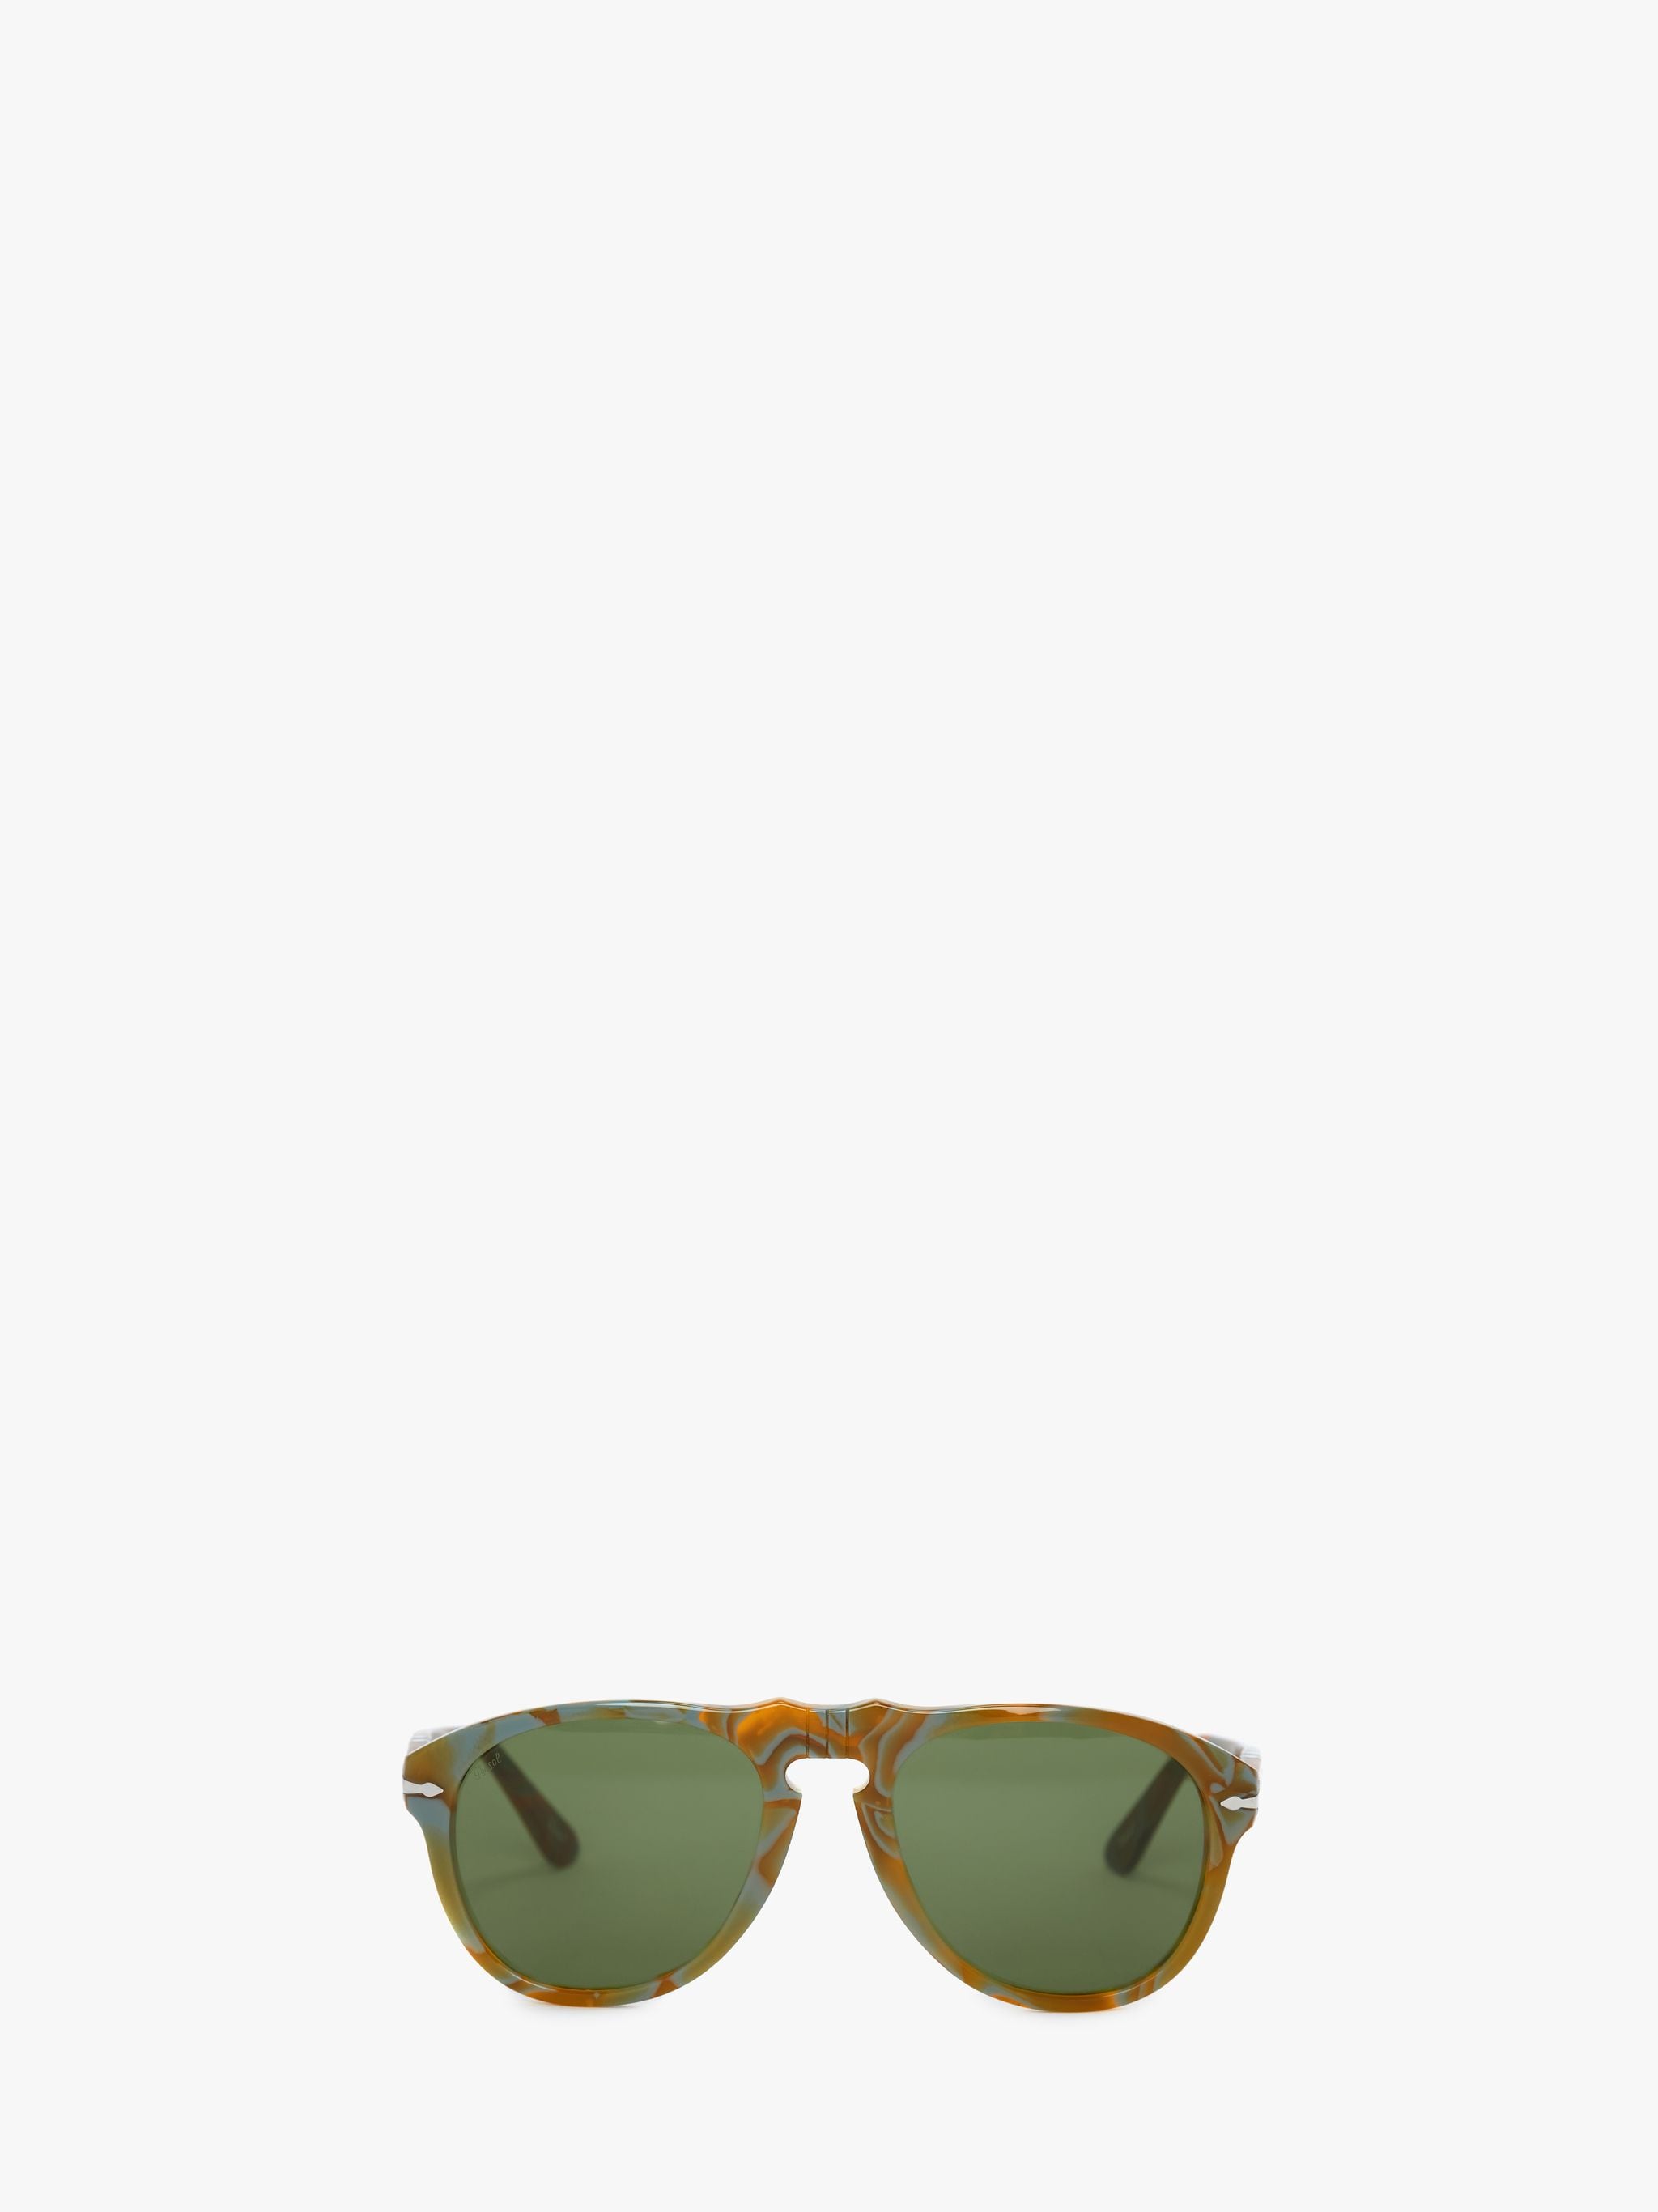 Солнцезащитные очки - авиатор JW Anderson, зеленый солнцезащитные очки boss авиаторы оправа металл для мужчин серый